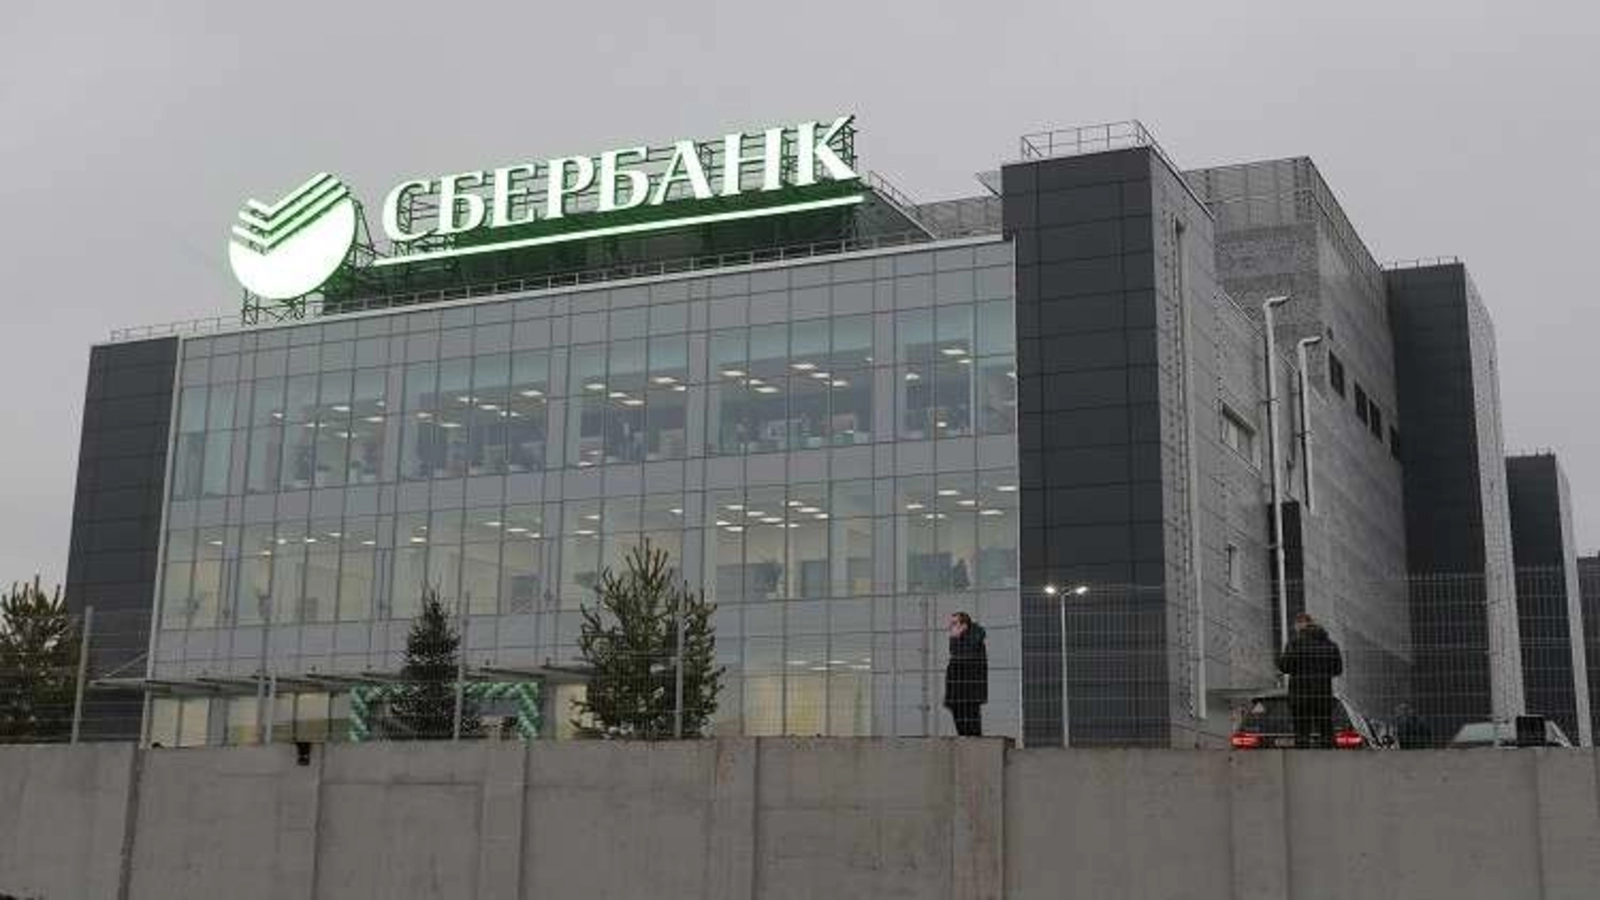  أكبر بنك في روسيا يصدر أصولاً مالية رقمية مدعومة بالذهب